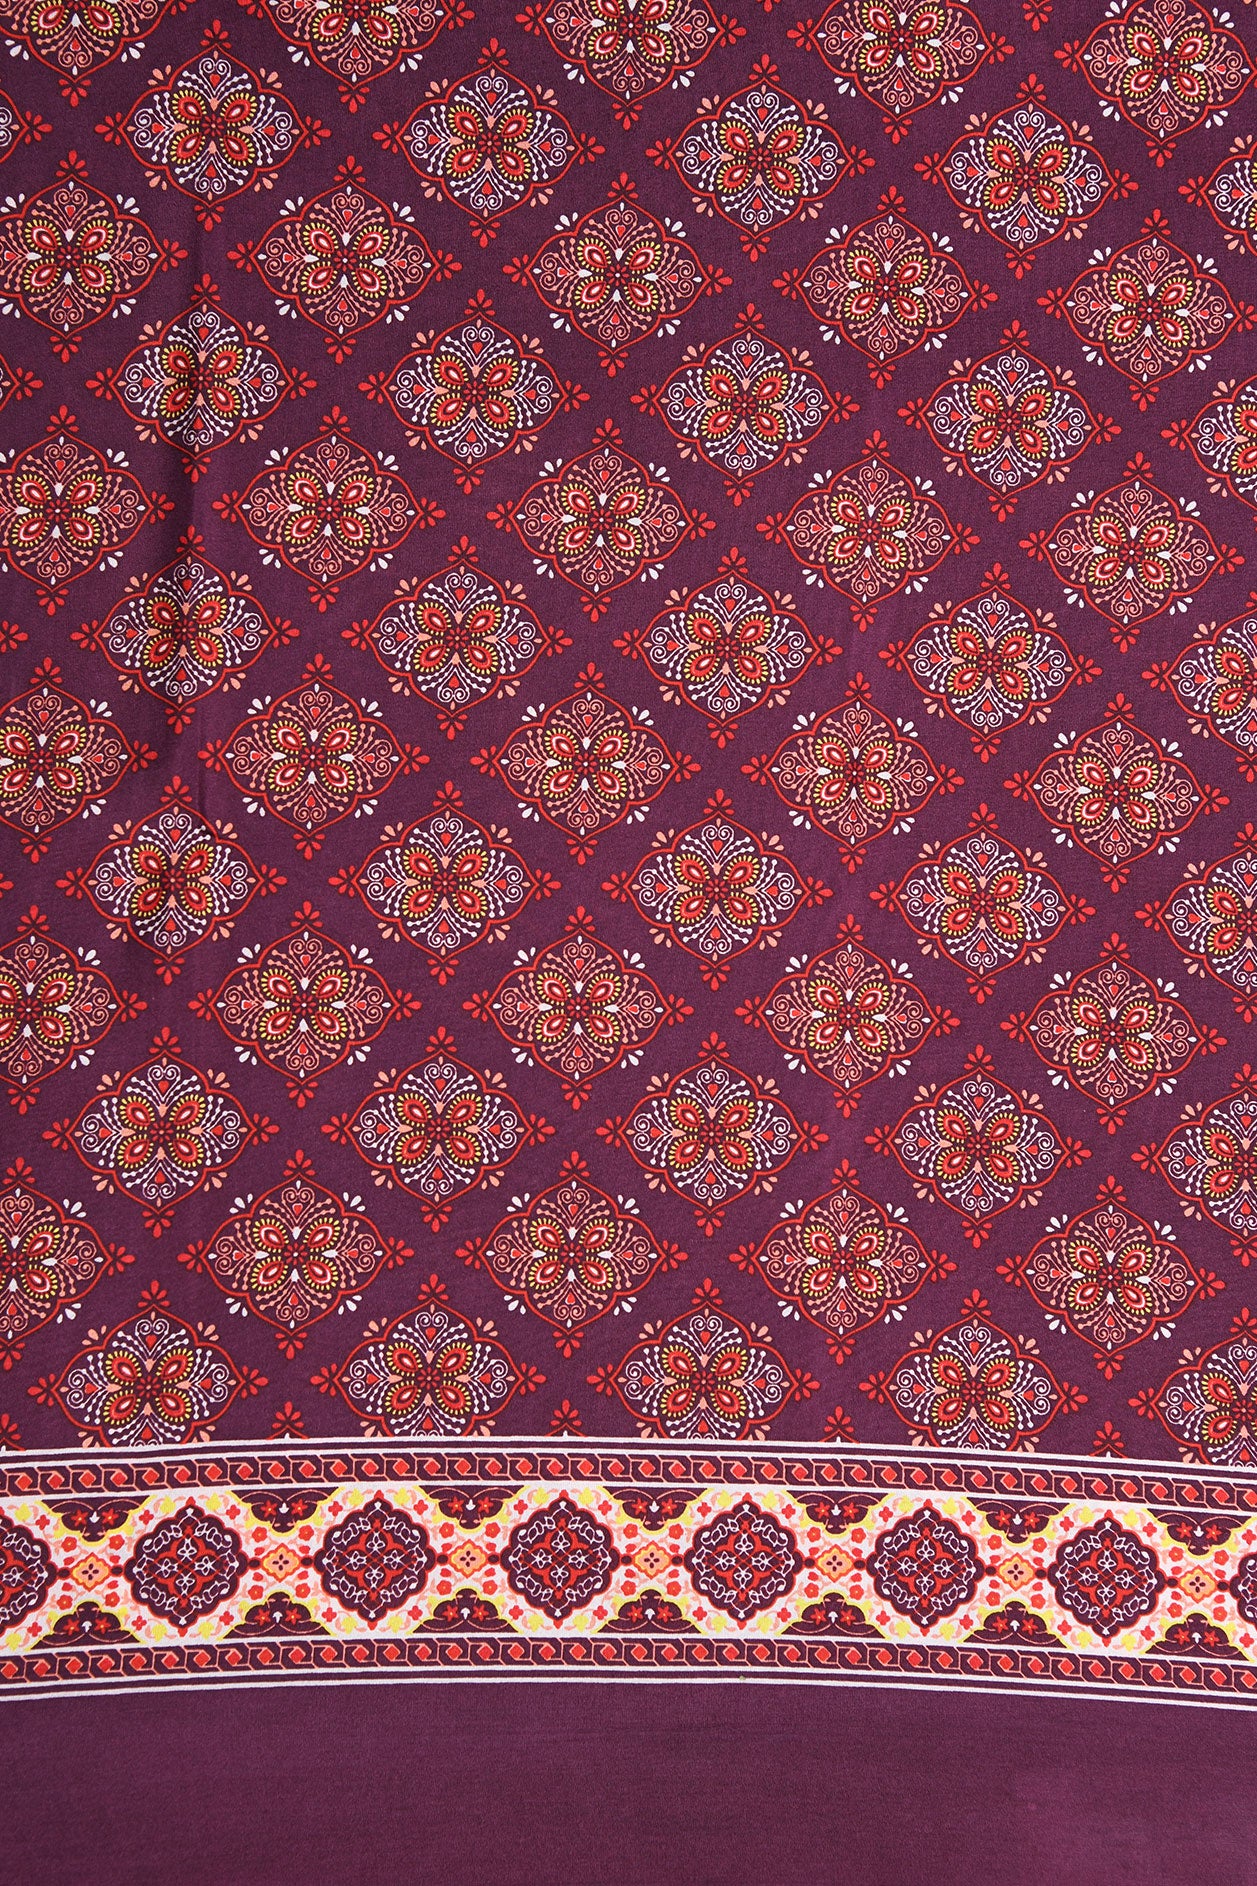 Kolam Design Mulberry Purple Printed Silk Saree